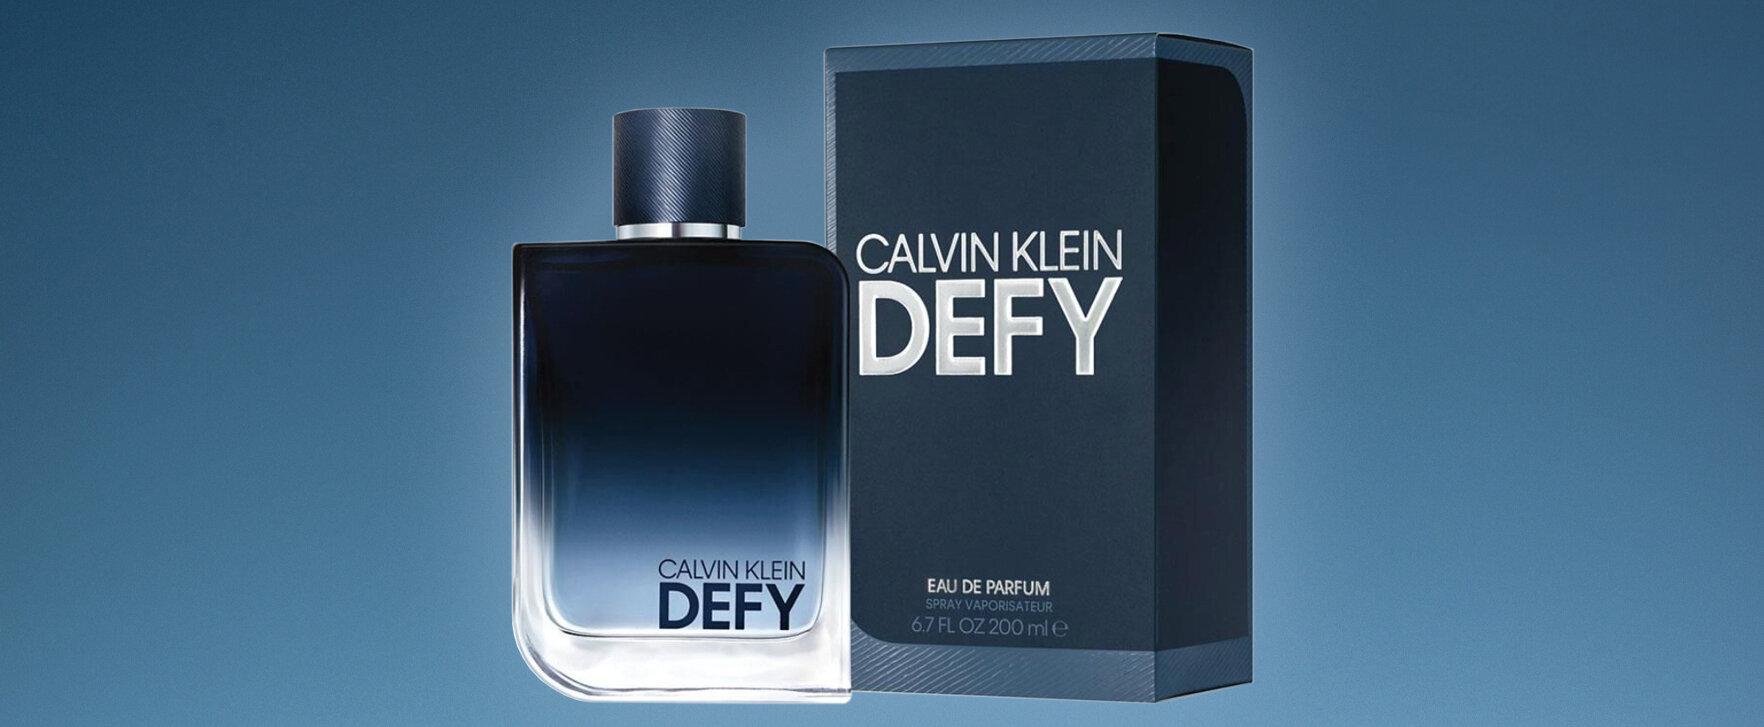 Calvin Klein lanciert „Defy“ als Eau de Parfum 